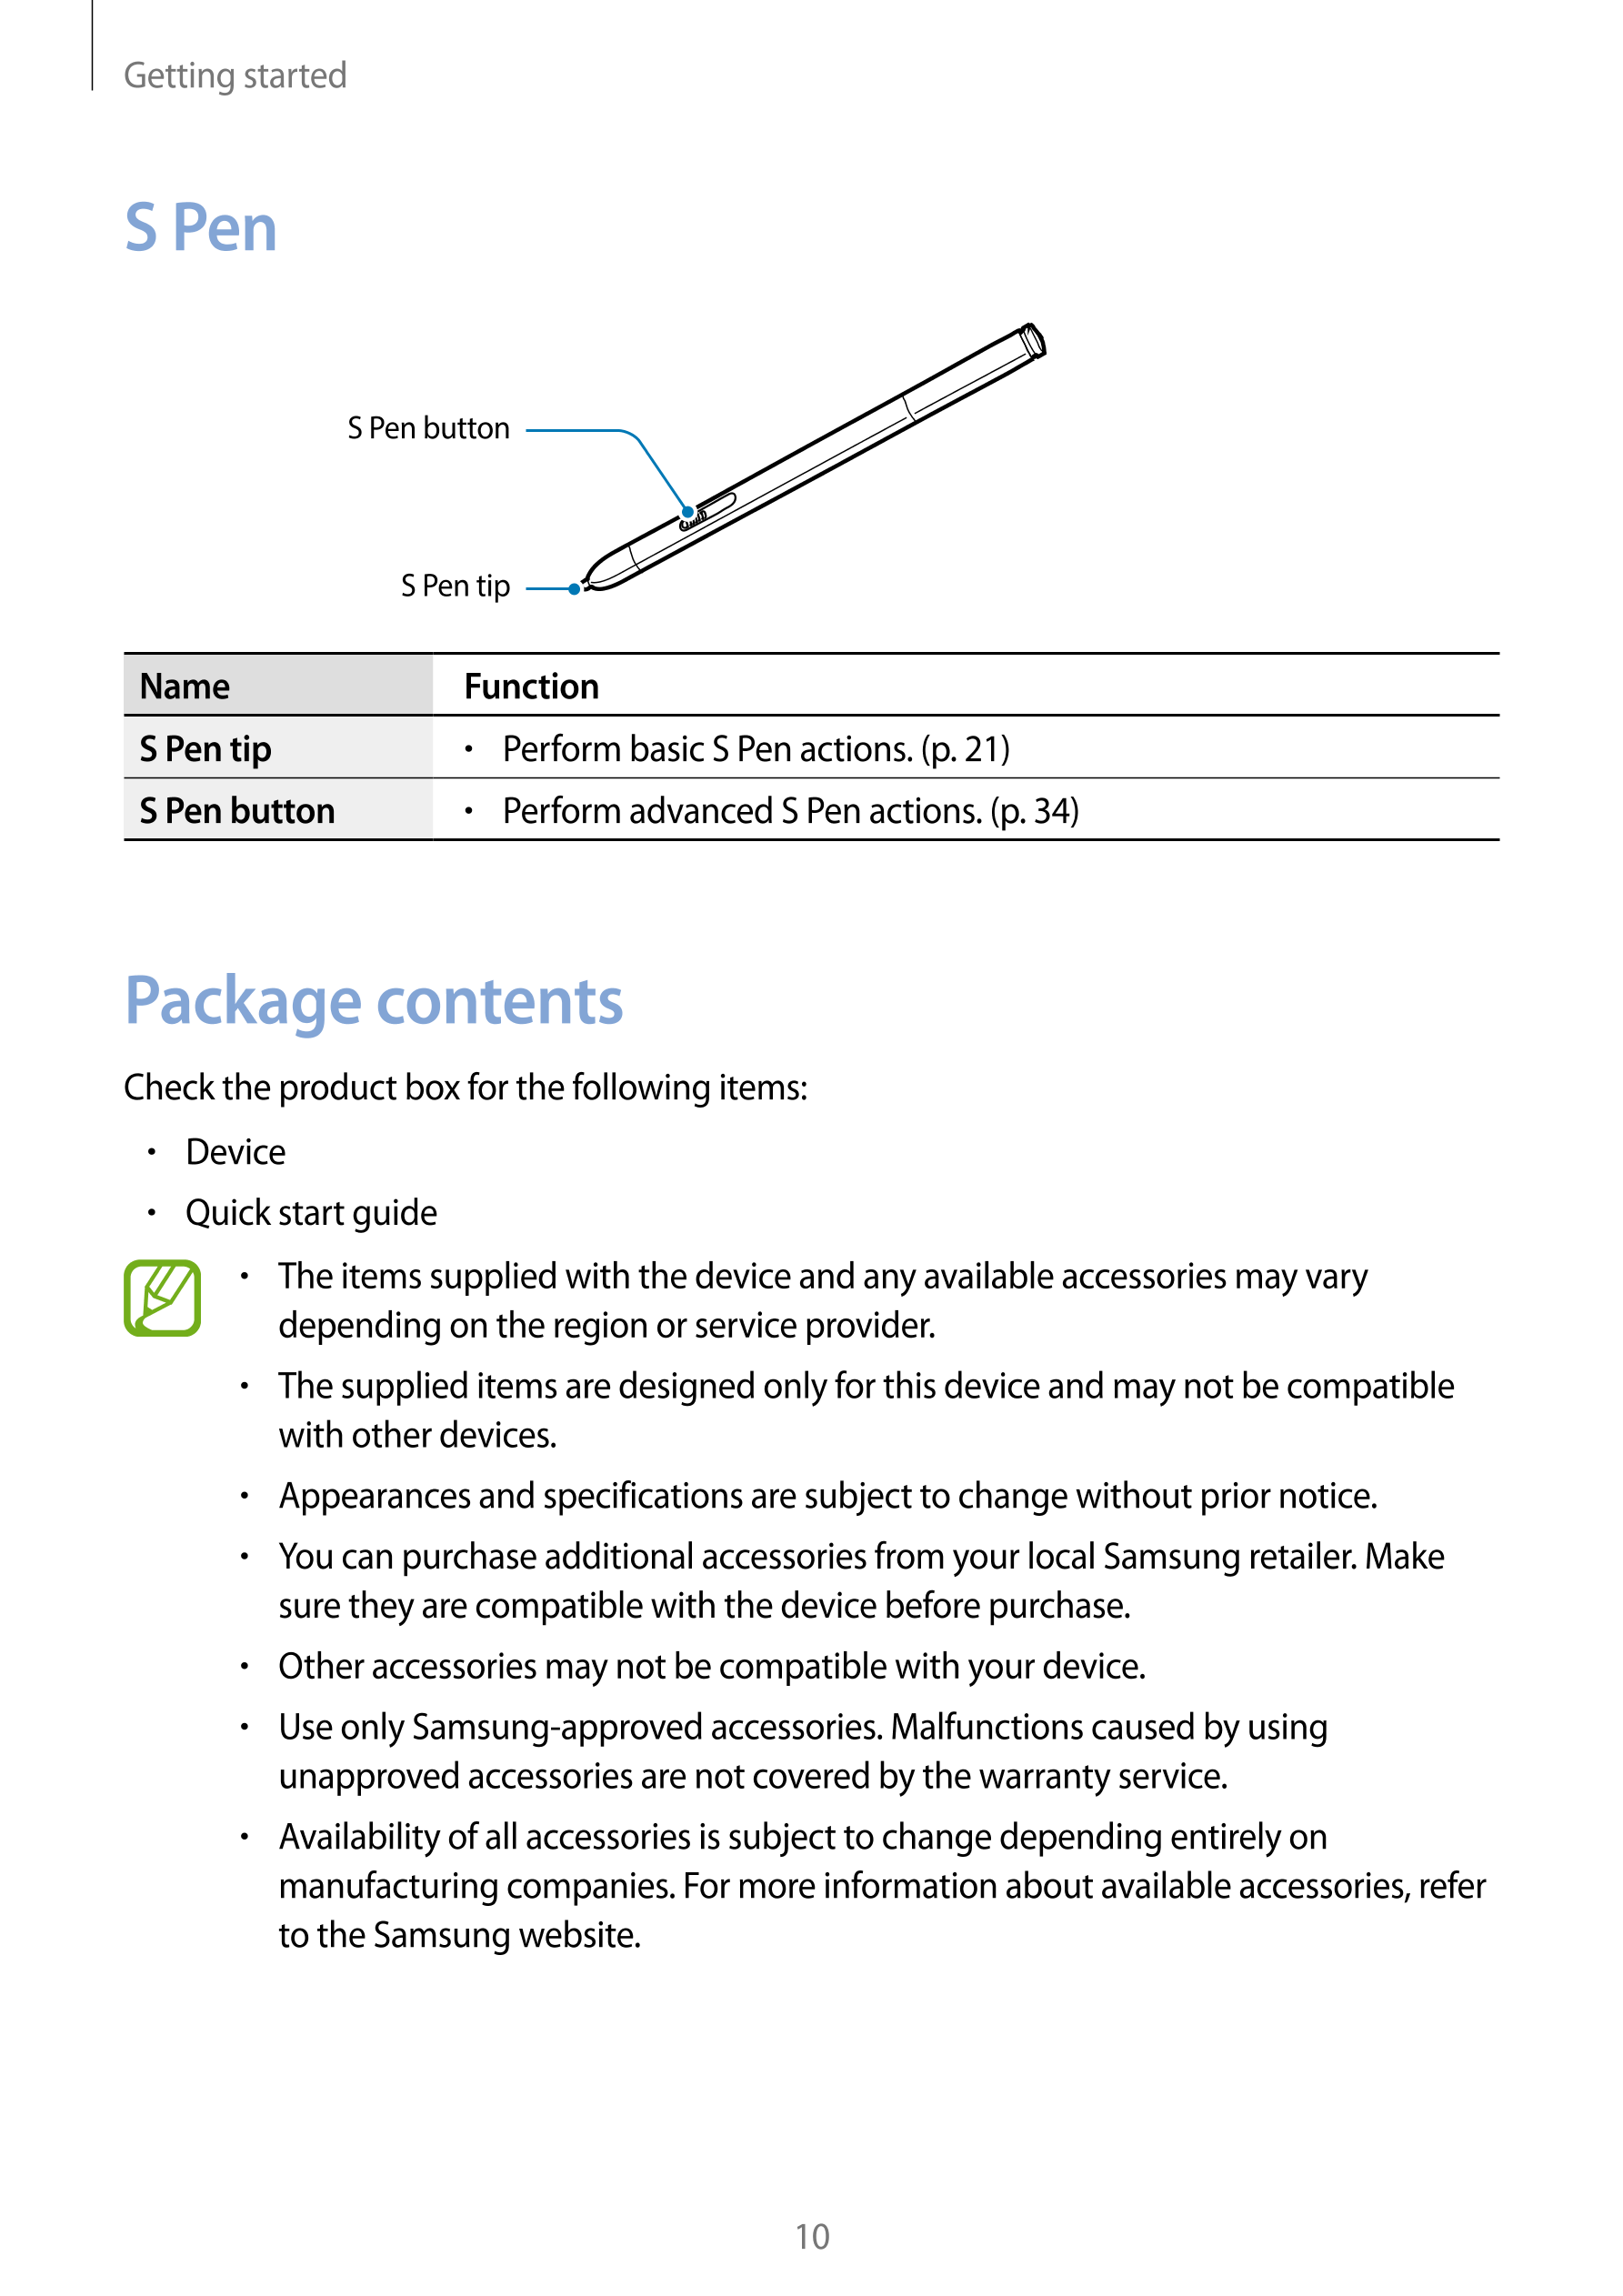 Getting started
S Pen
S Pen button
S Pen tip
Name Function
S Pen tip •    Perform basic S Pen actions. (p. 21)
S Pen button •   